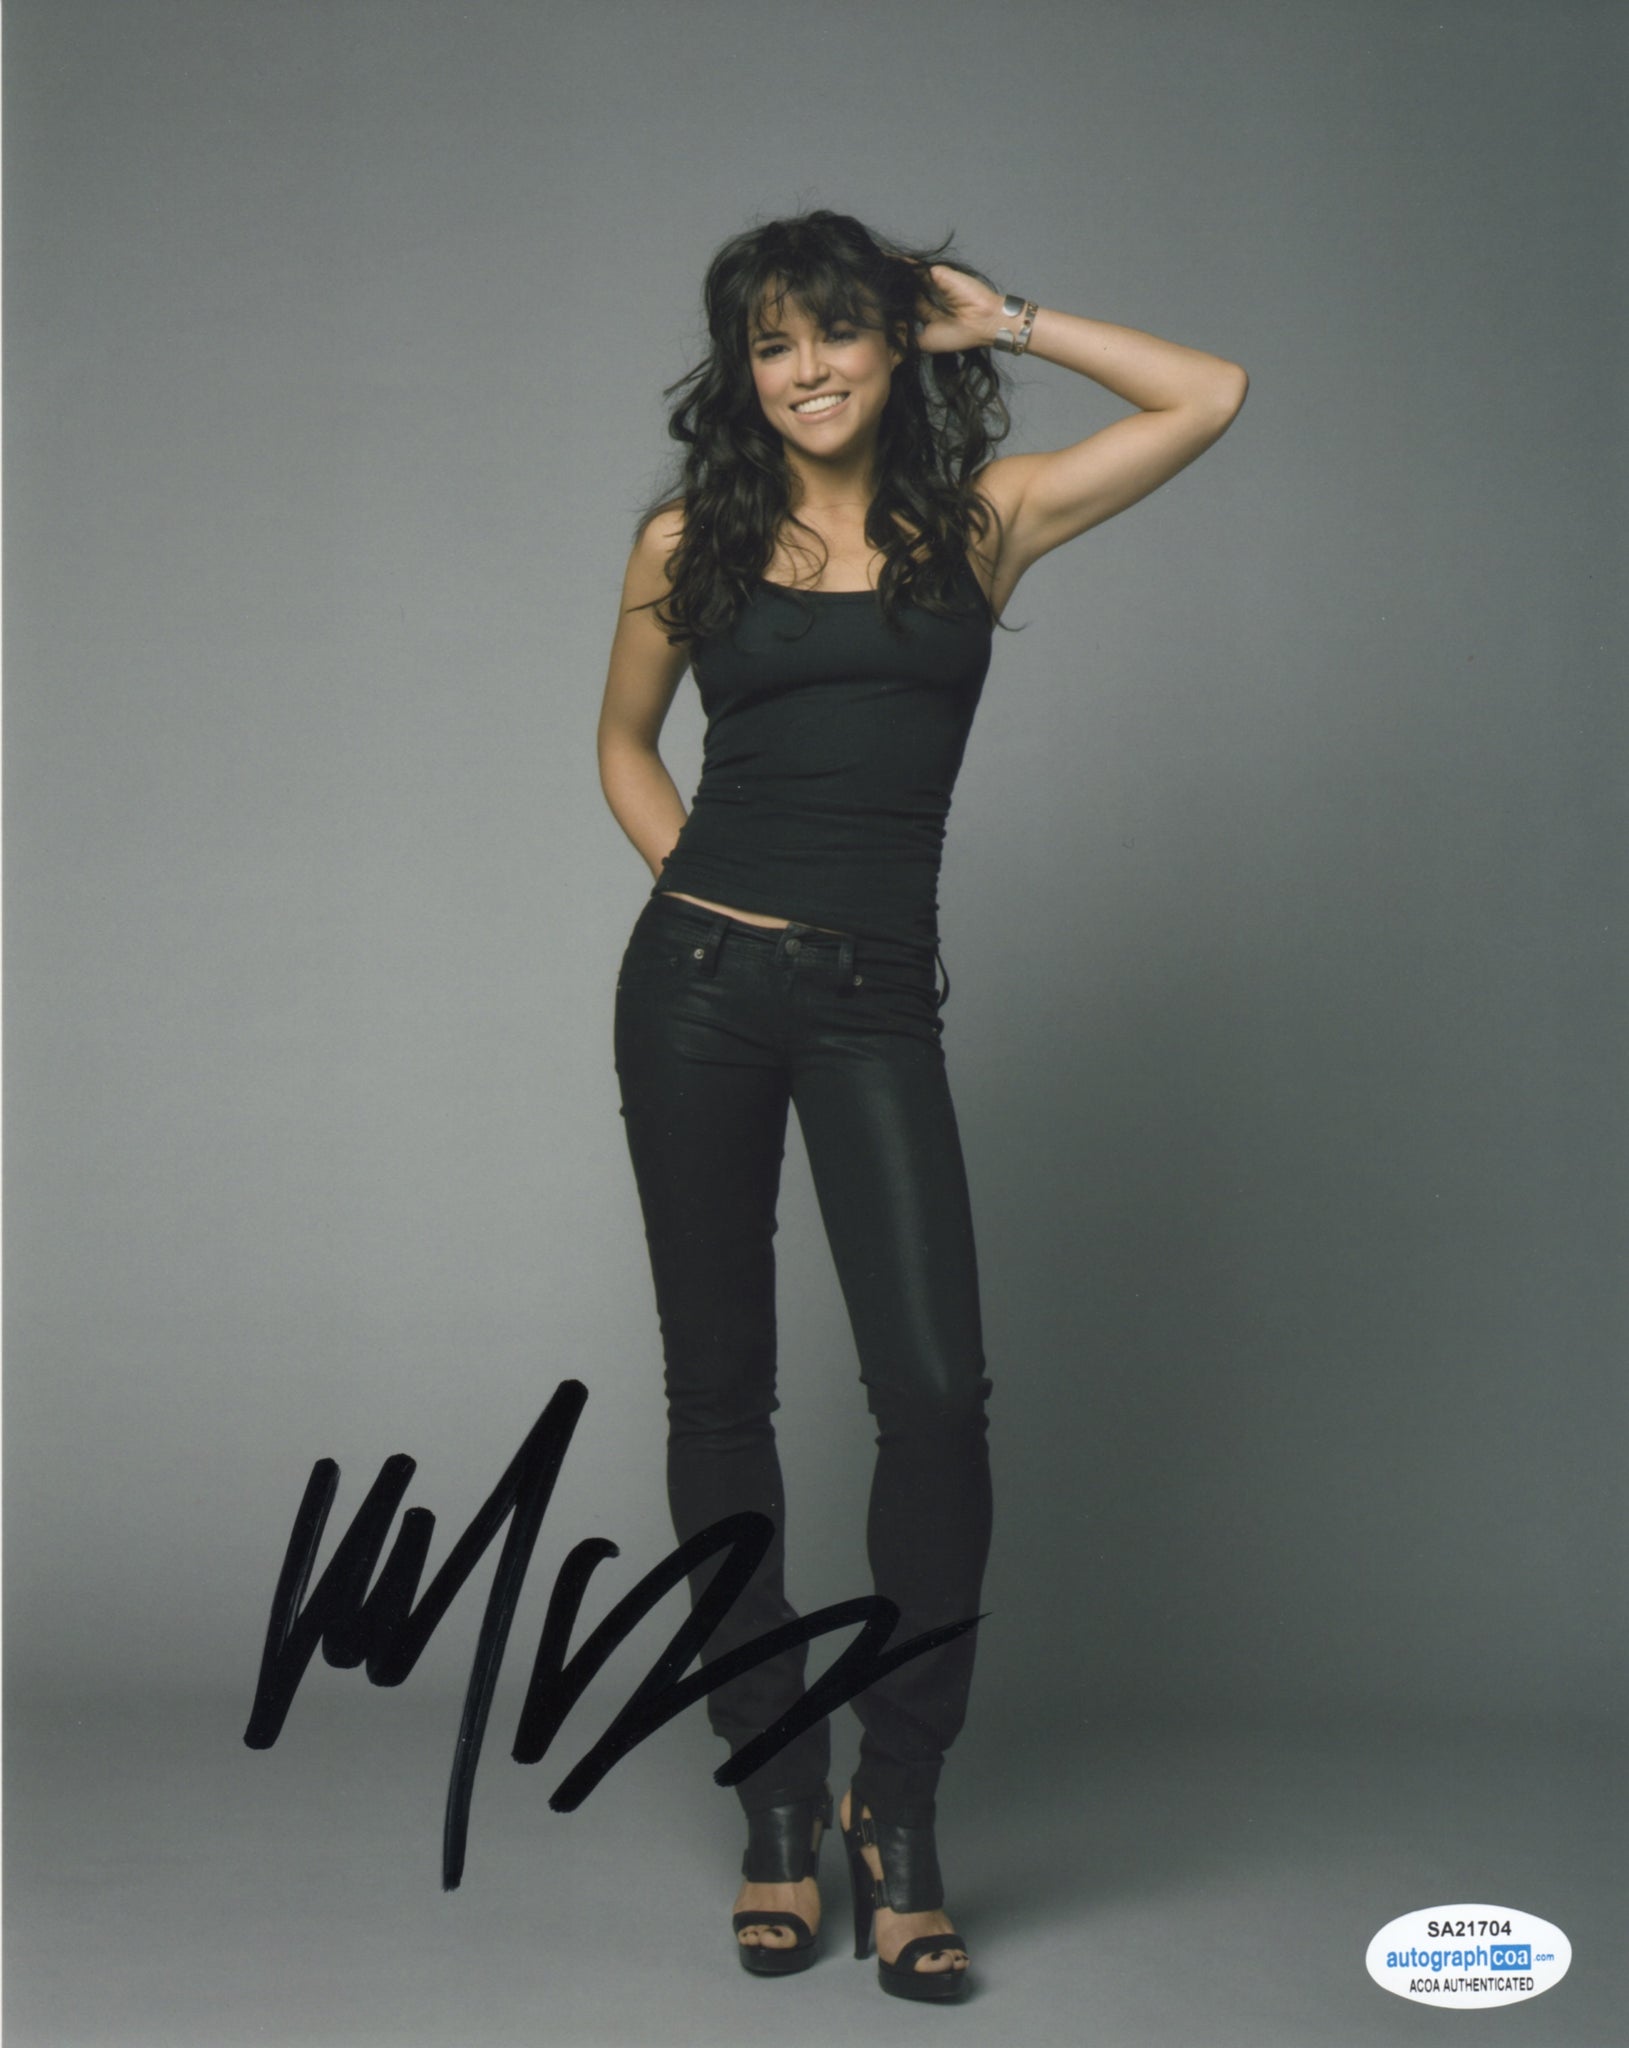 Michelle Rodriguez Fast Furious Signed Autograph 8x10 Photo ACOA #4 - Outlaw Hobbies Authentic Autographs